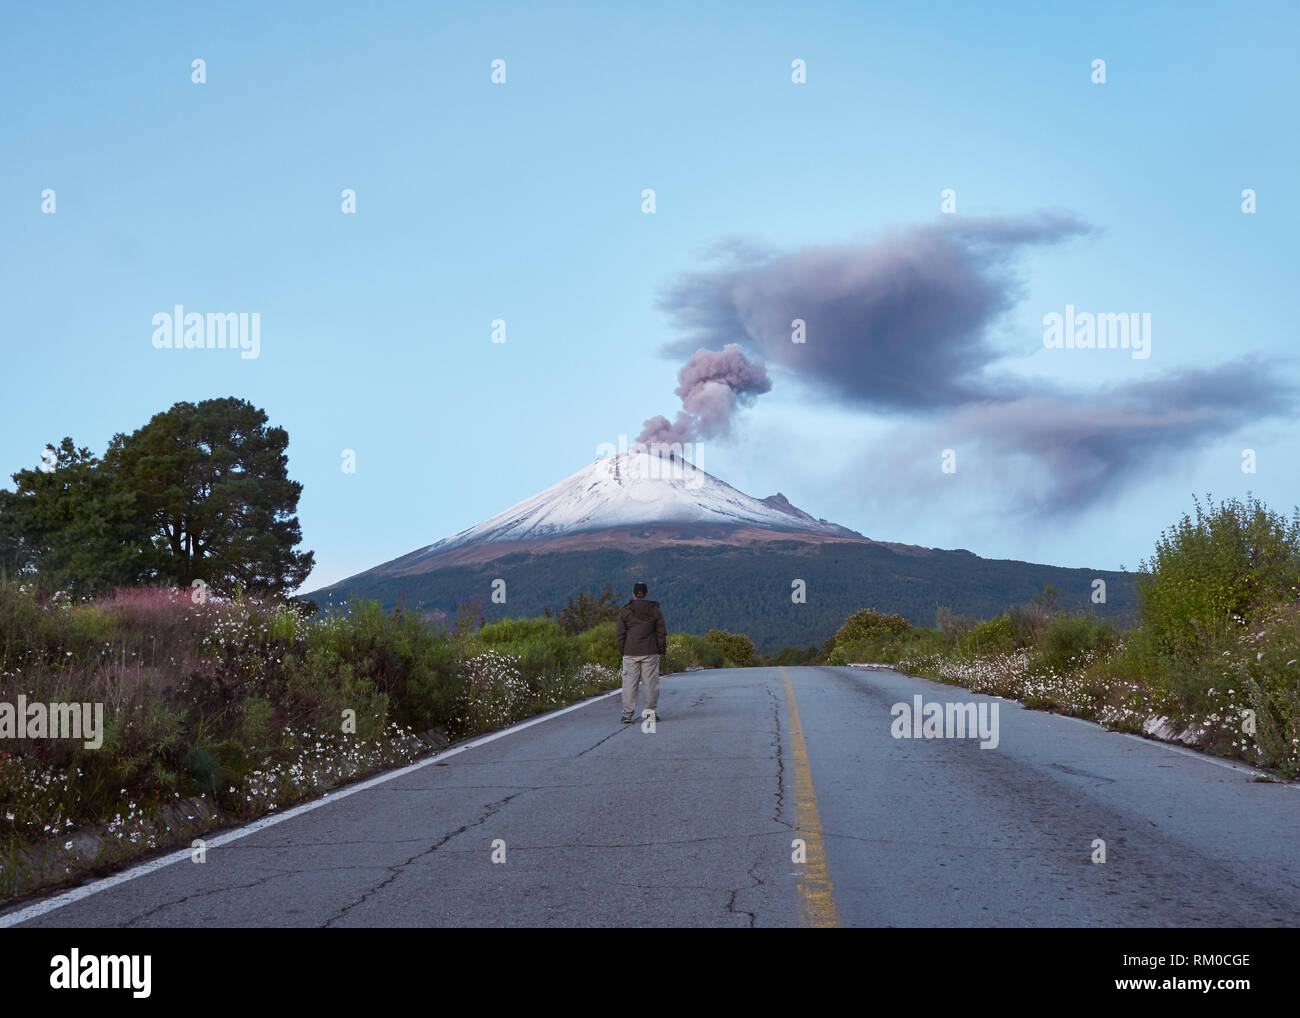 Mount popocatepetl fotografías e imágenes de alta resolución - Página 2 -  Alamy